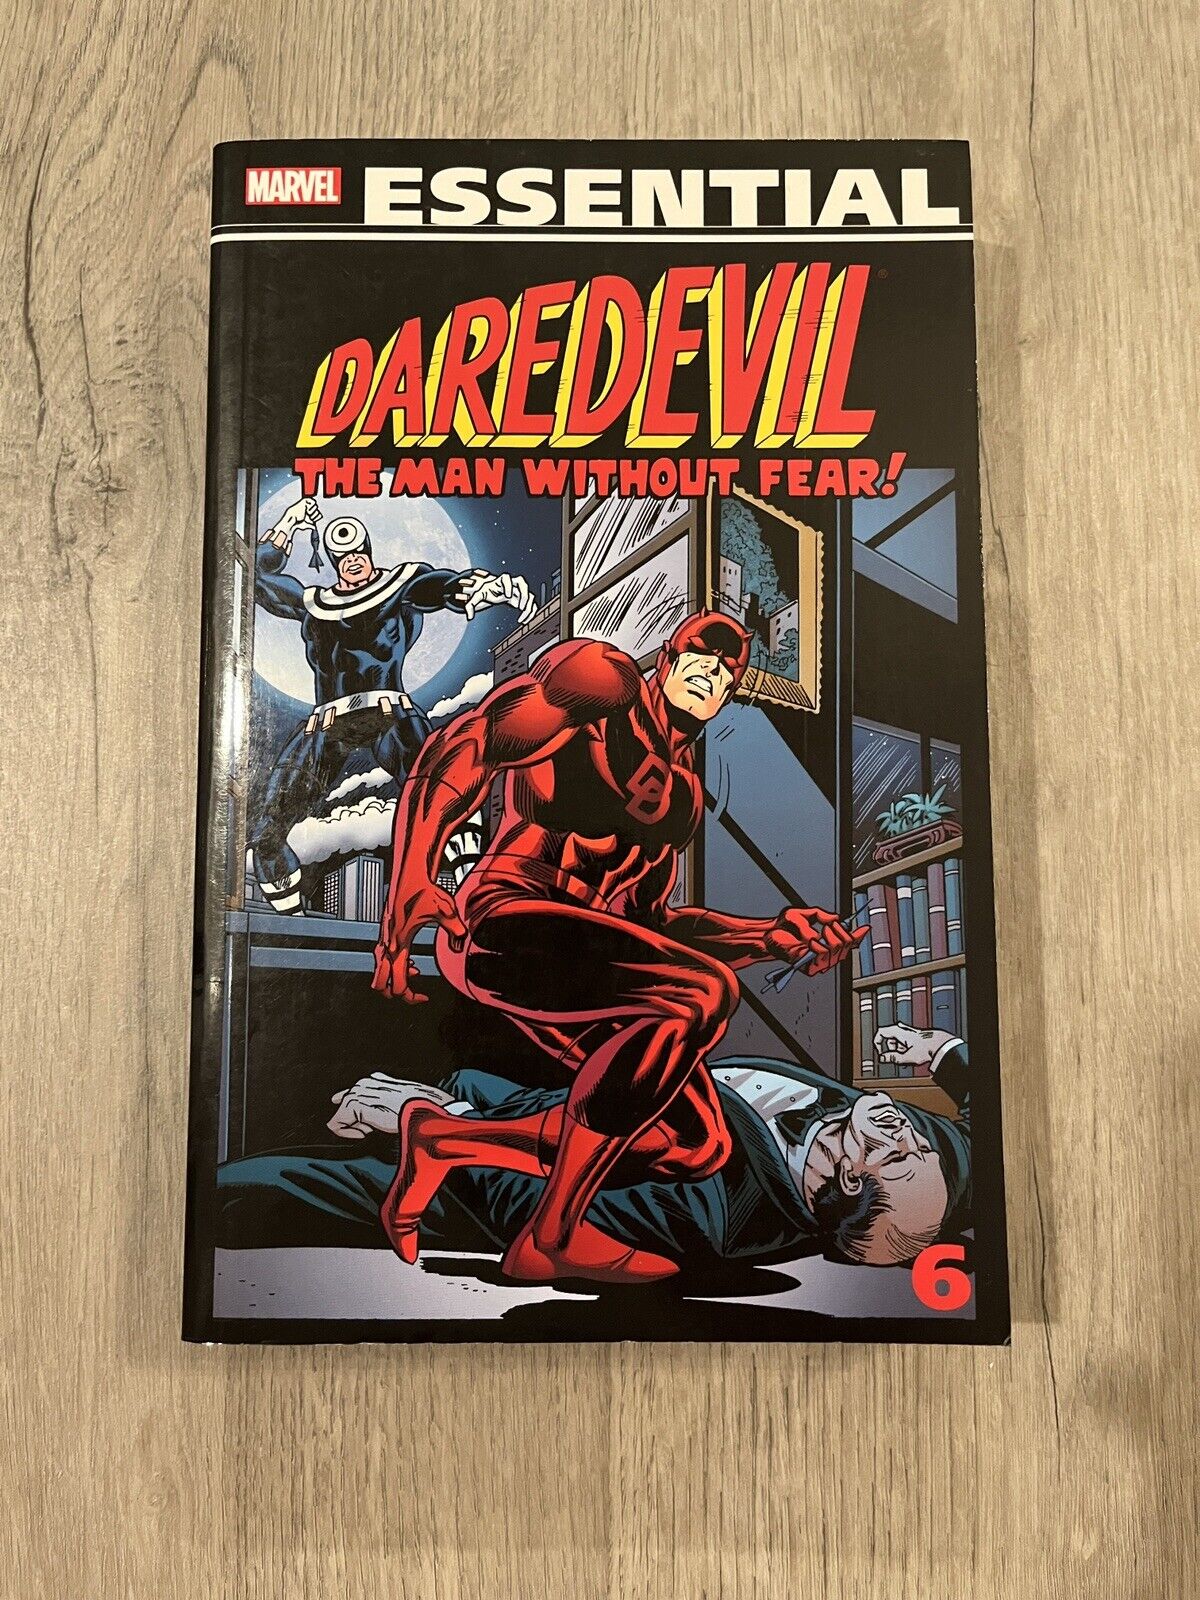 Essential Daredevil #6 (Marvel, November 2013)